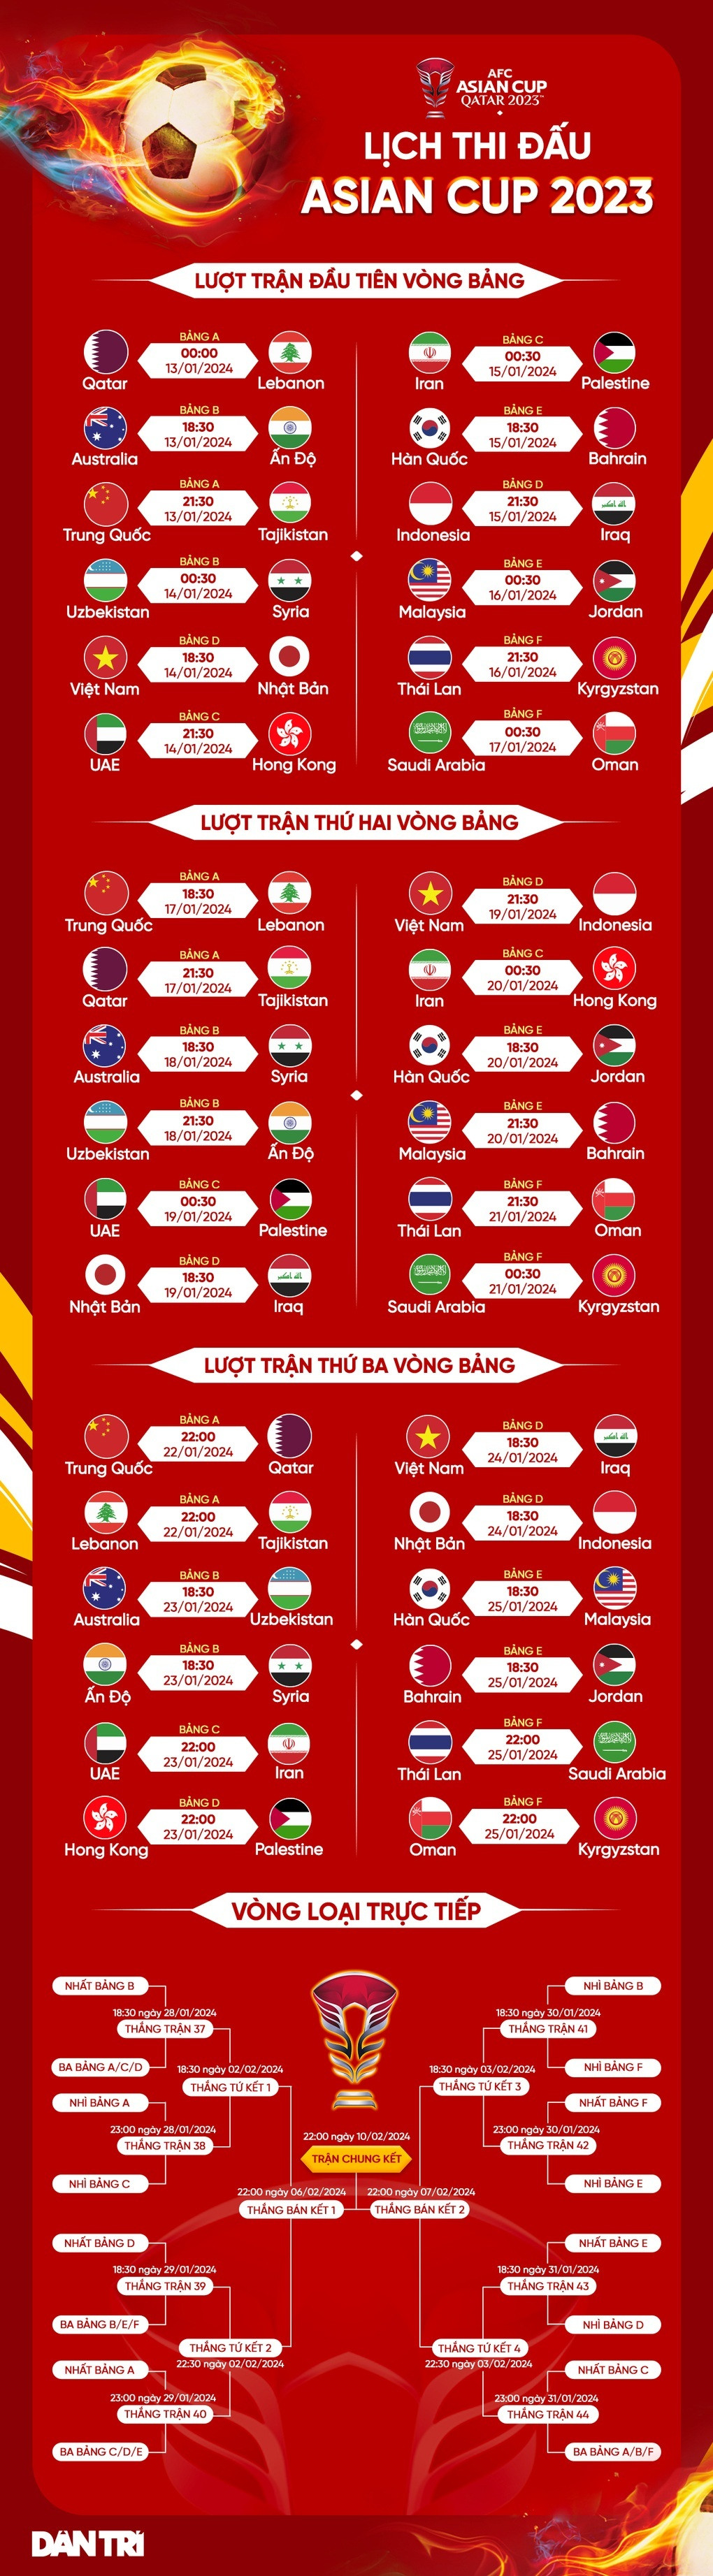 Khai mạc Asian Cup 2023: Đậm sắc màu văn hóa Arab - 10